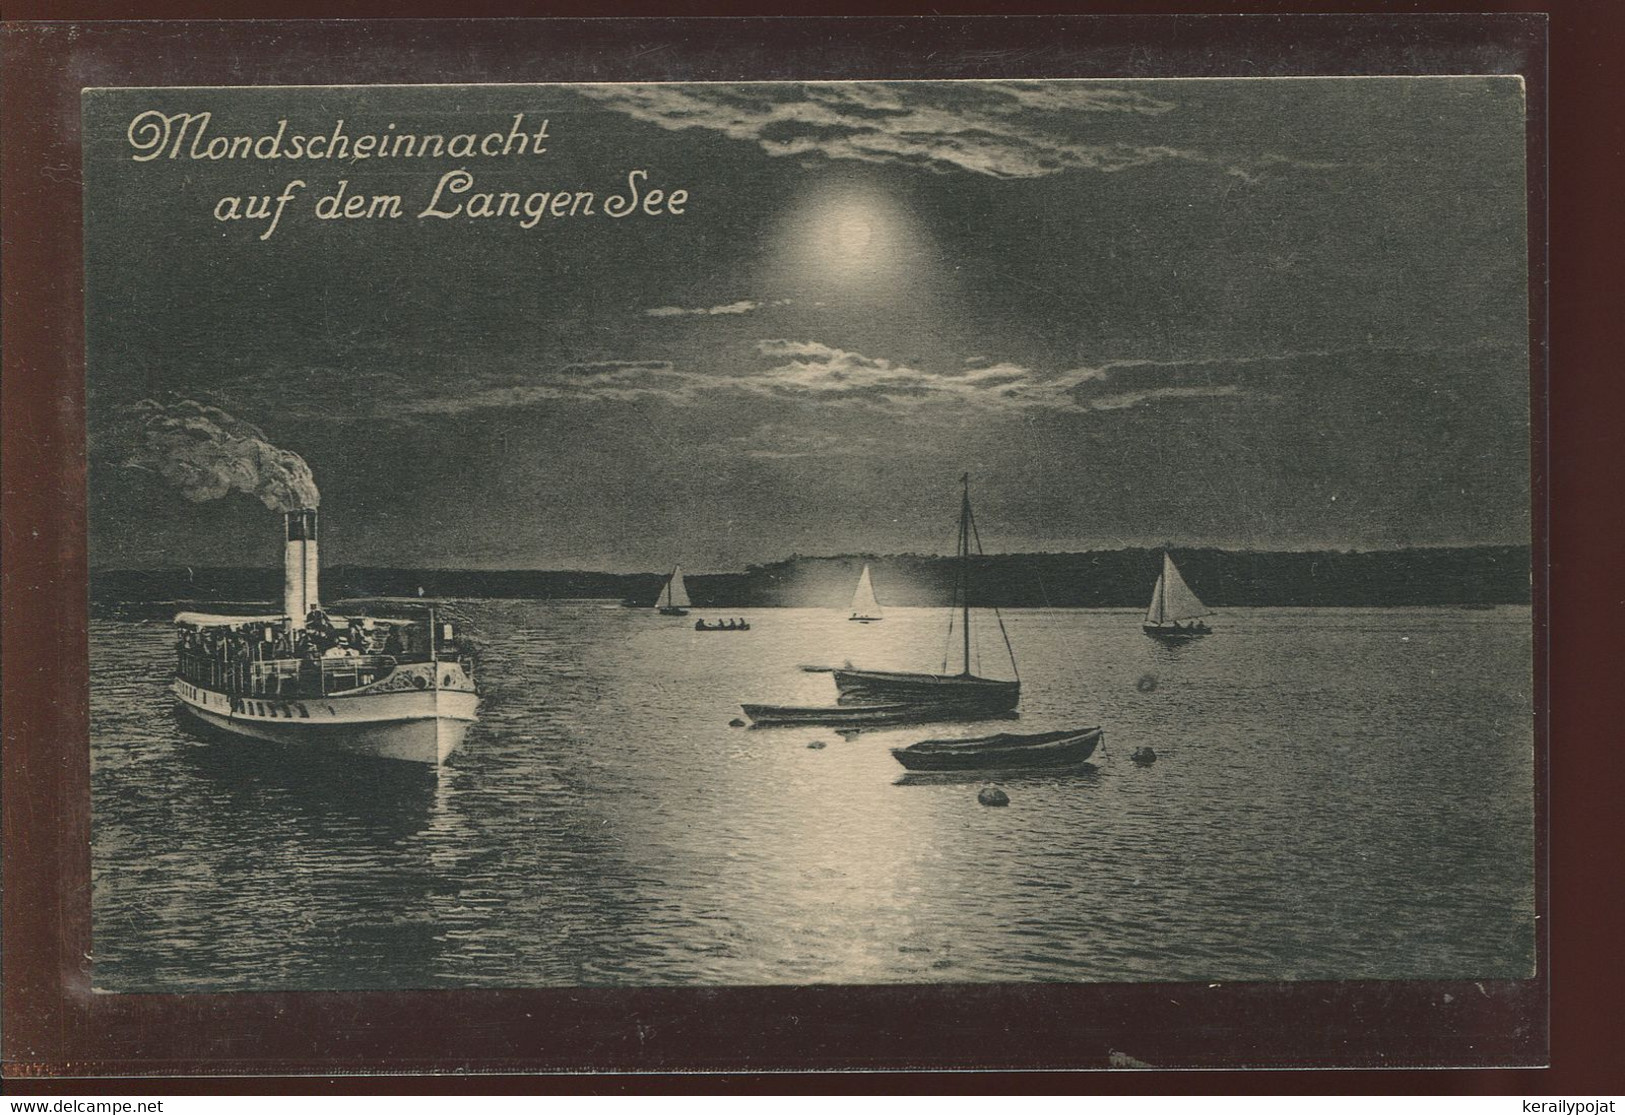 Germany Langen See Mondscheinnacht__(1199) - Langen